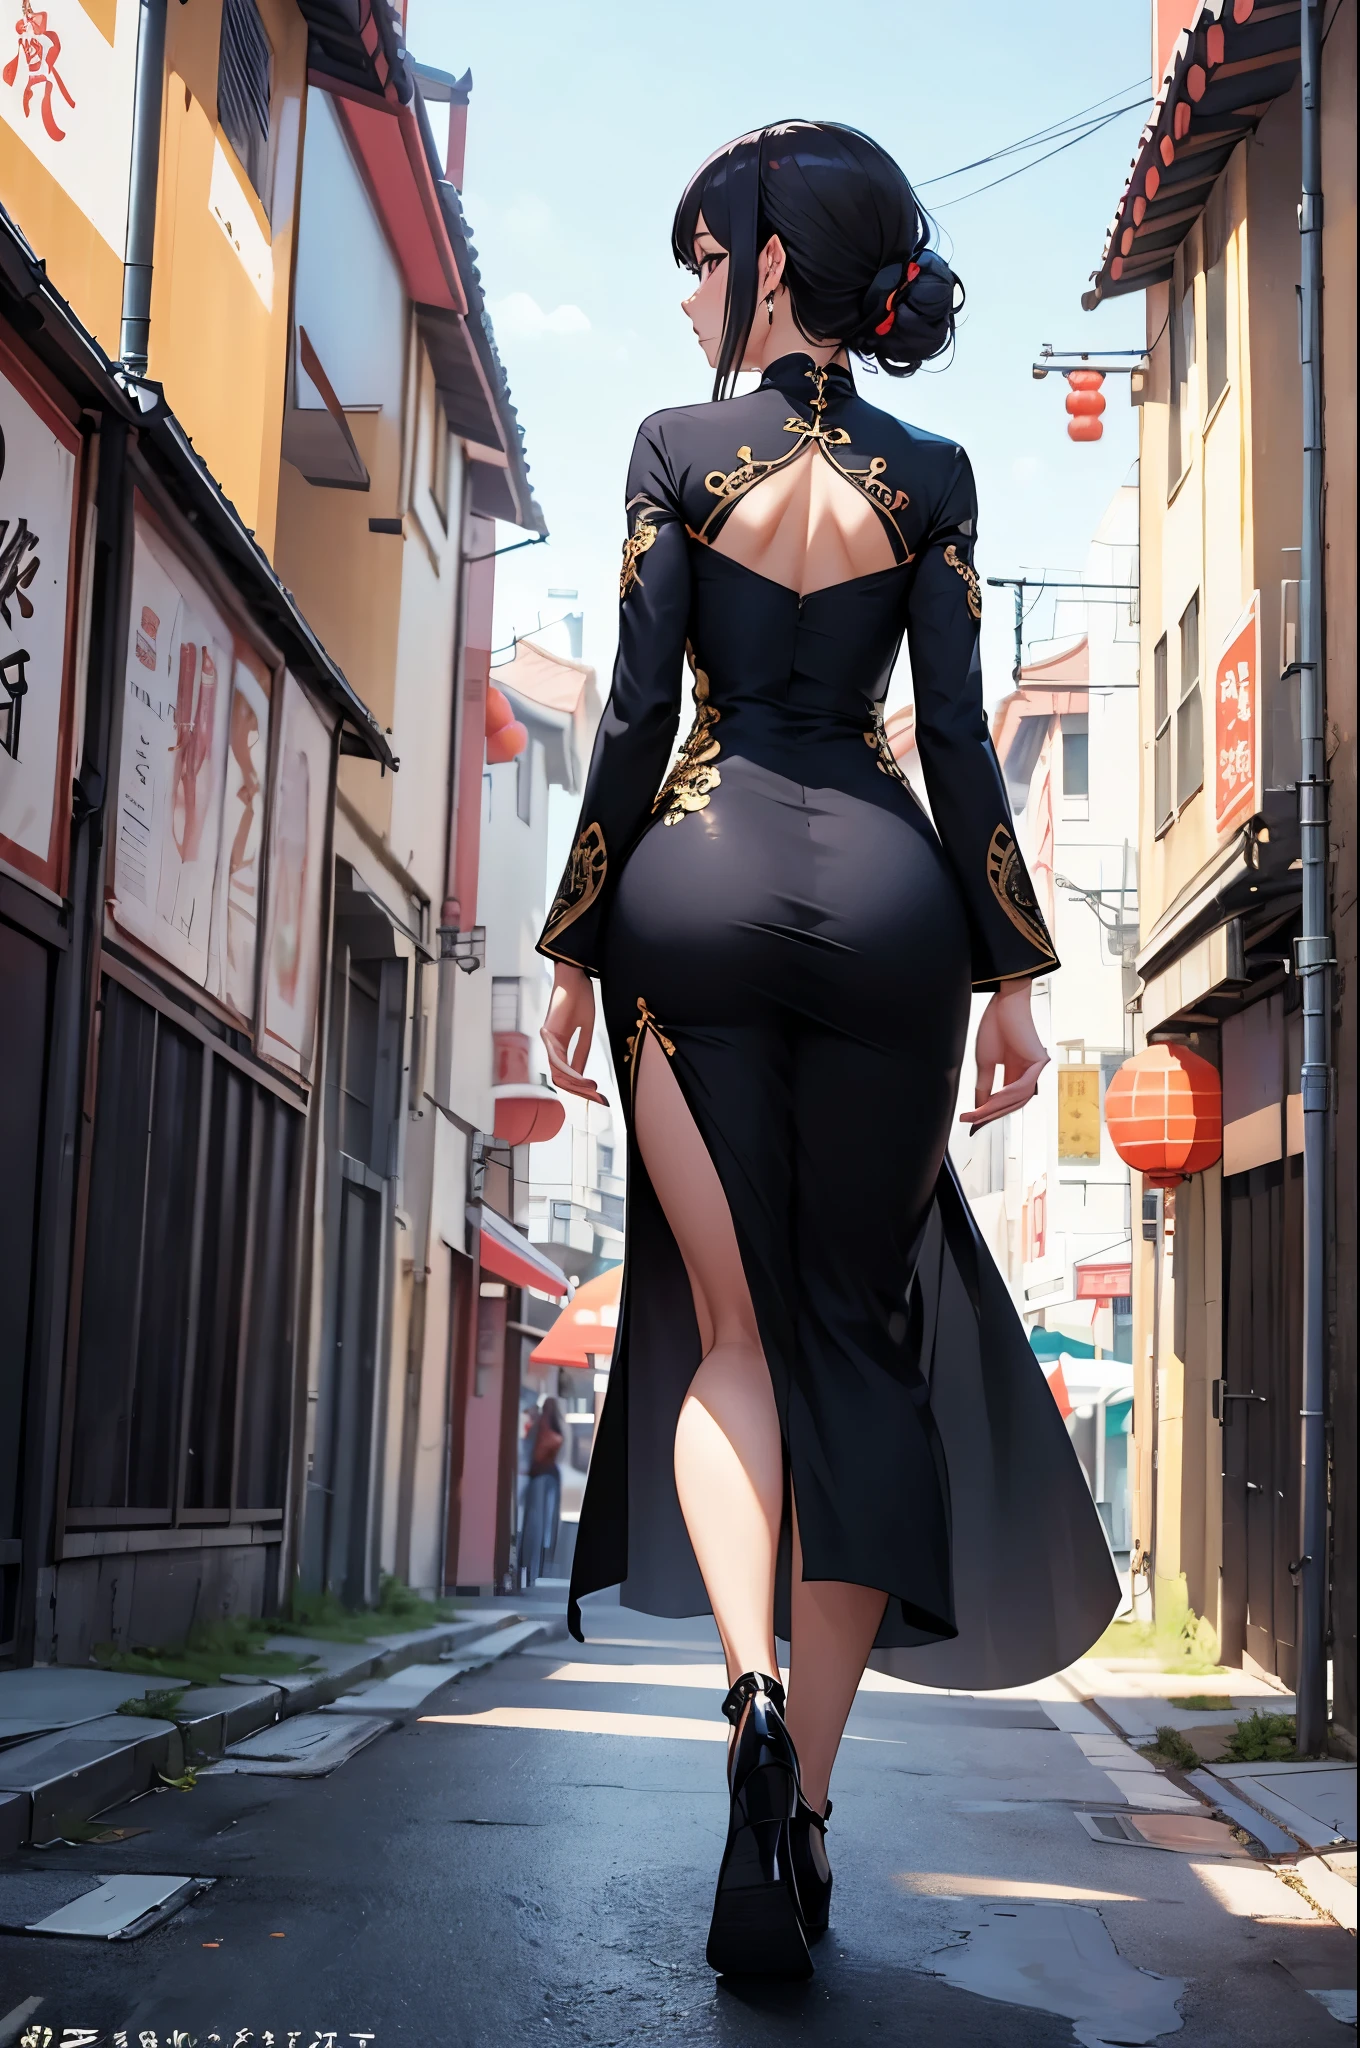 Eine sexy Frau, (beste Qualität), (Meisterwerk), (1 Mädchen), schlank, Anime-Serie, (chinesisches kleid), (gehen), (Porträt), (Ganzkörperansicht), (Blick von hinten), (Blick nach links)
